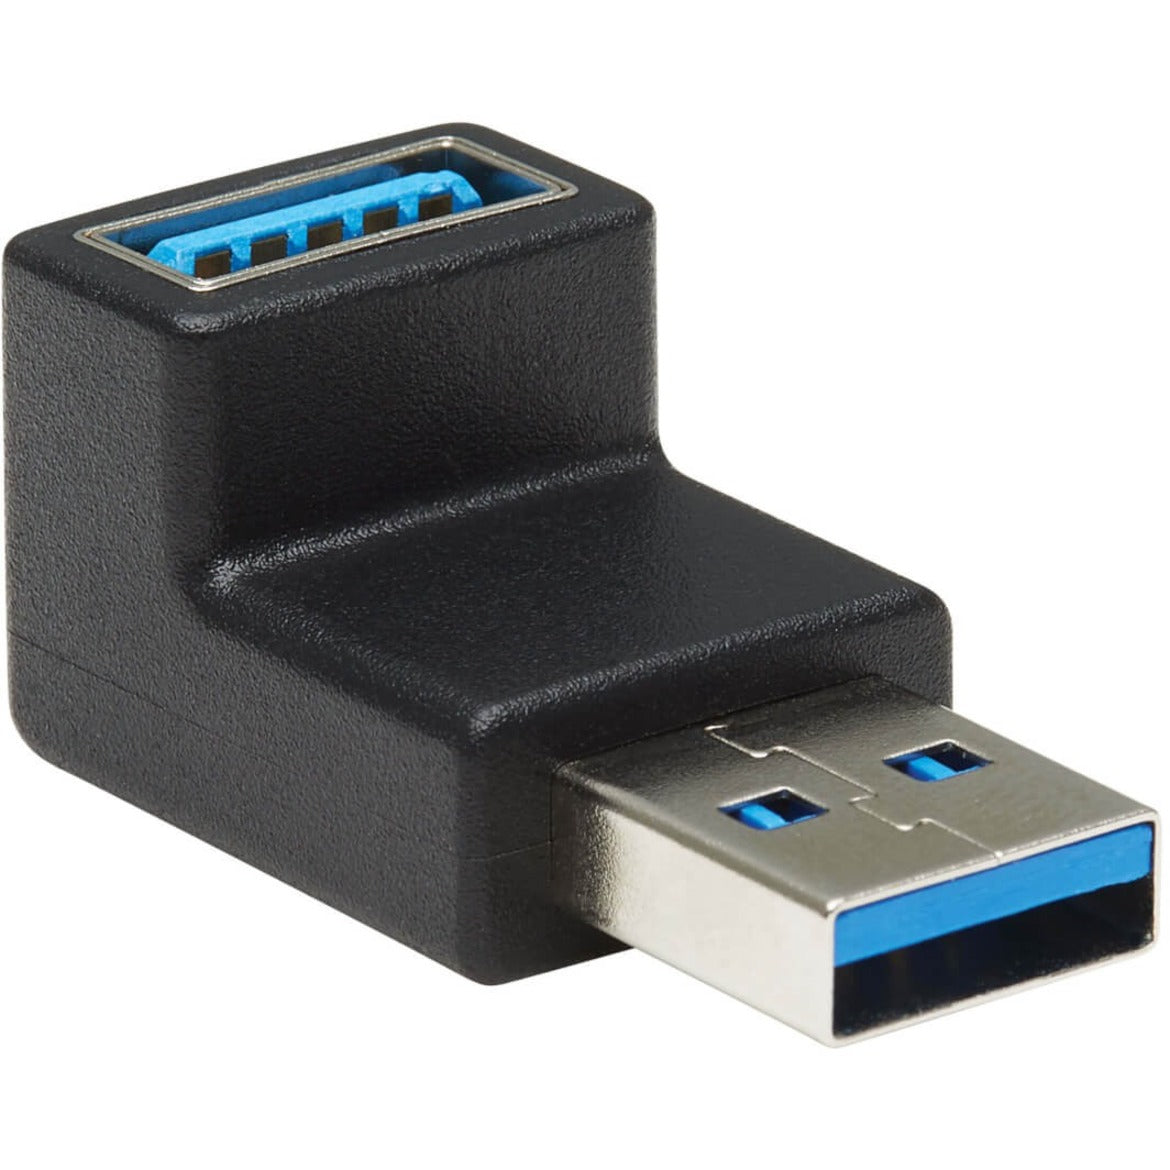 تريب لايت U324-000-DN محول سوبر سبيد USB 3.0 - USB-A إلى USB-A، ذكر/أنثى، زاوية سفلية، أسود